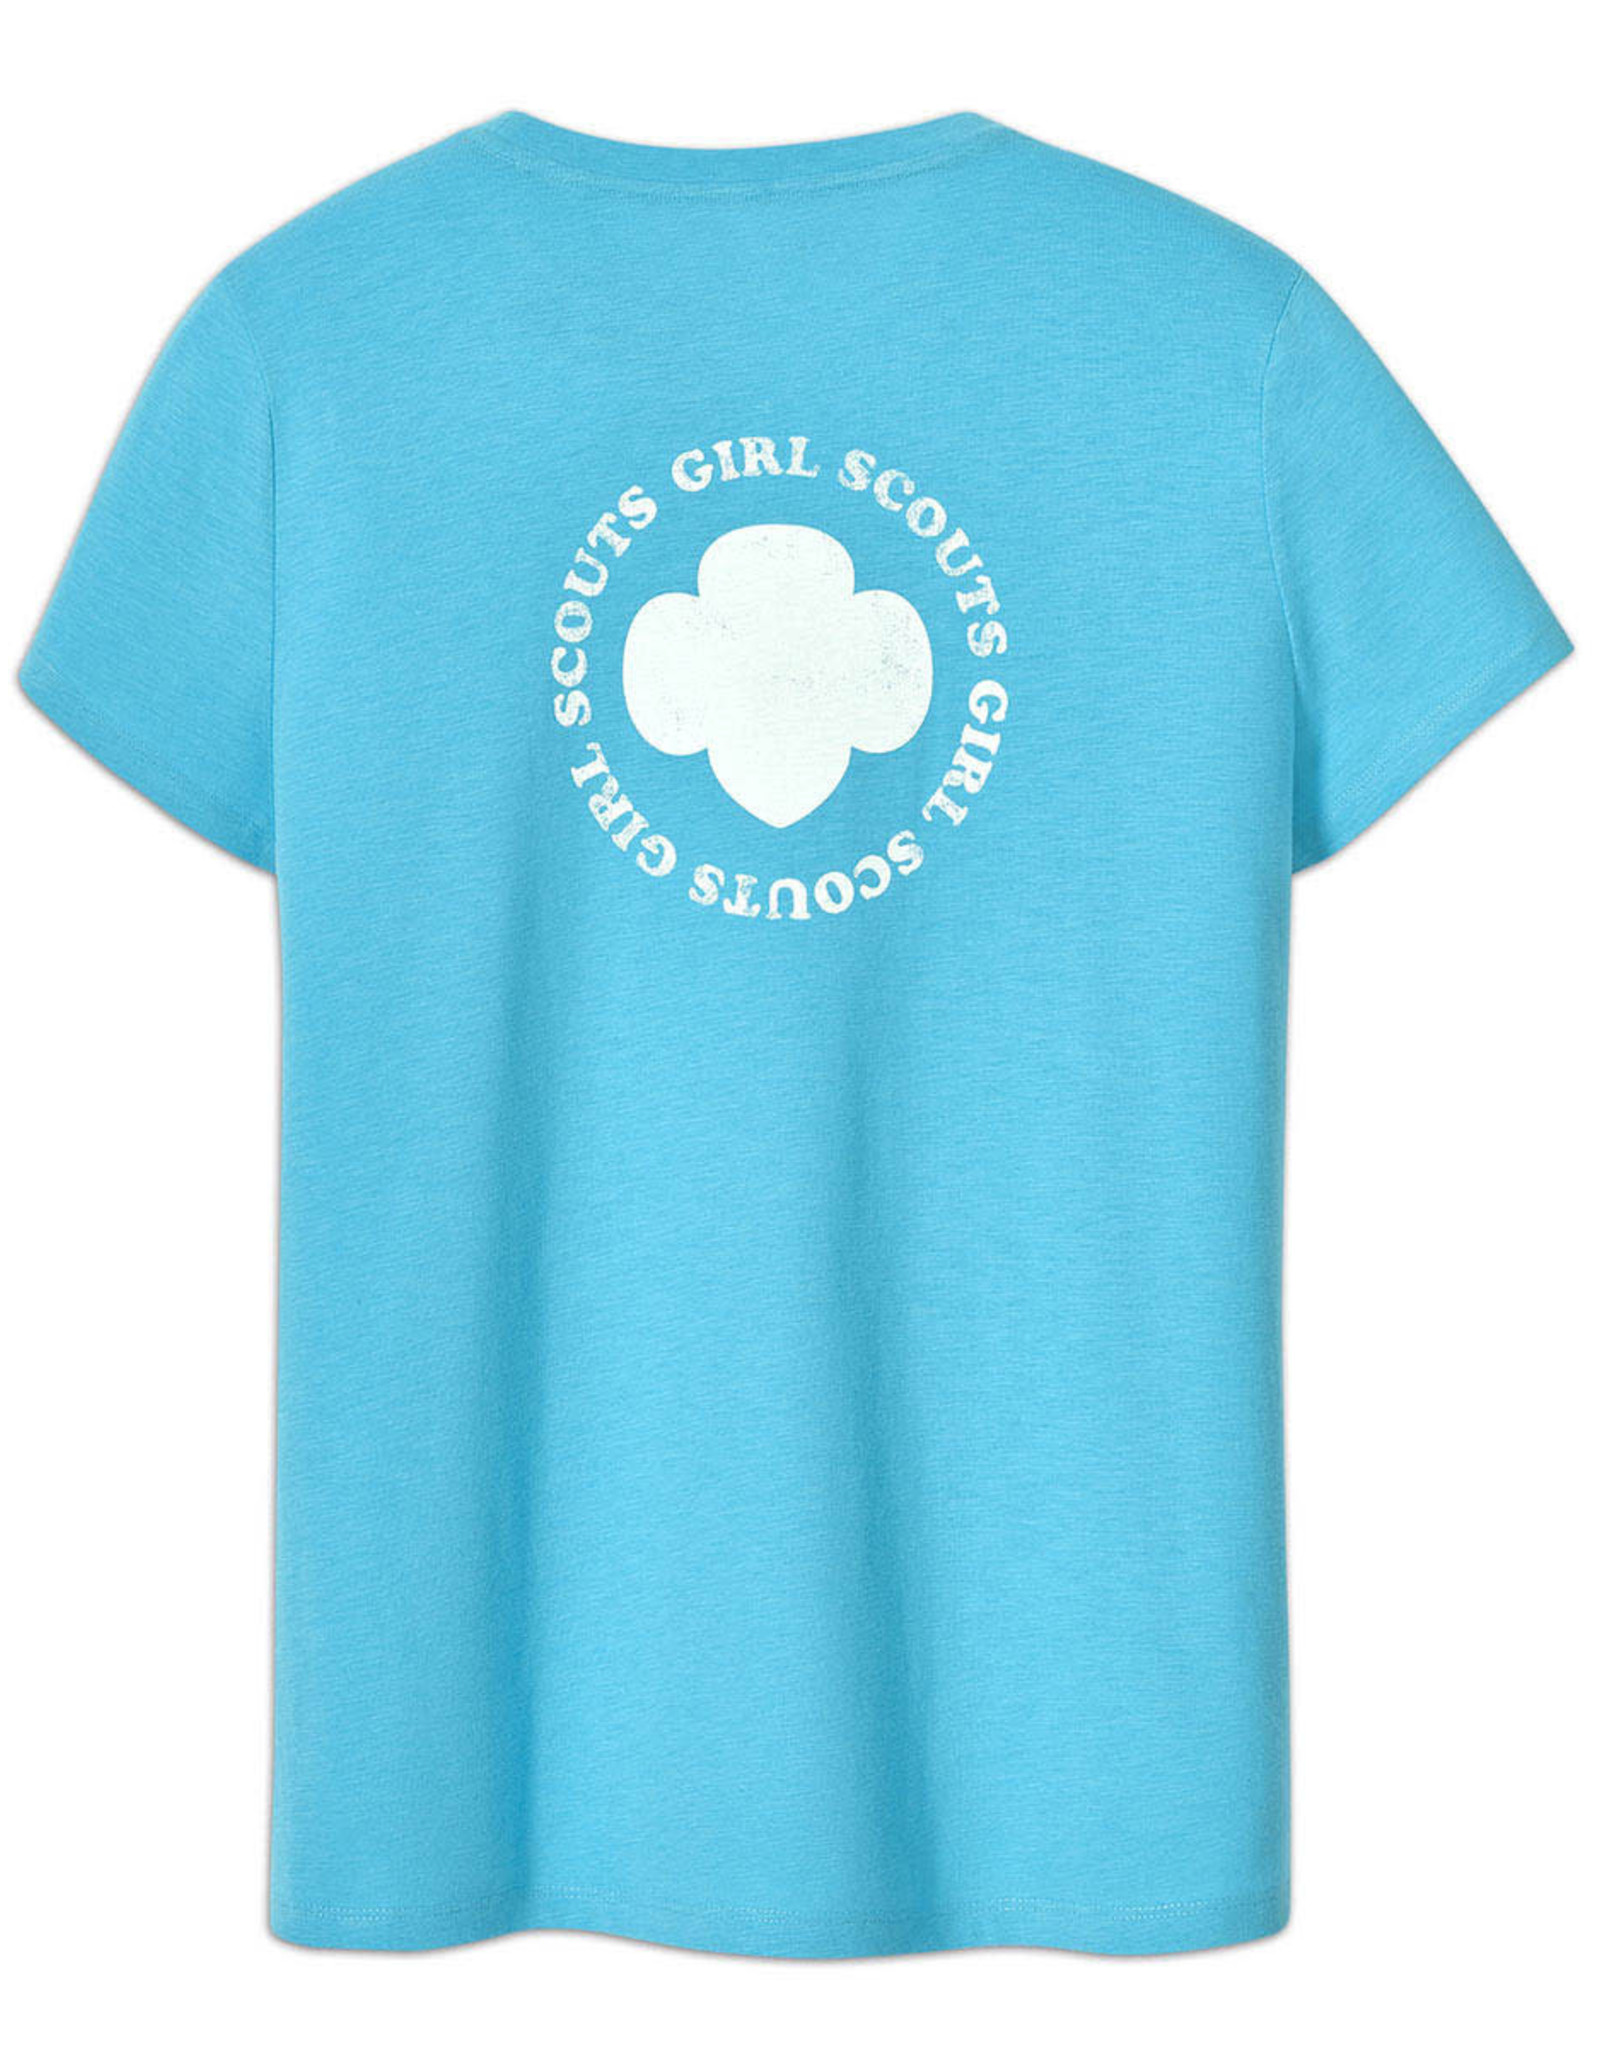 Blue Trefoil T-Shirt - Women's